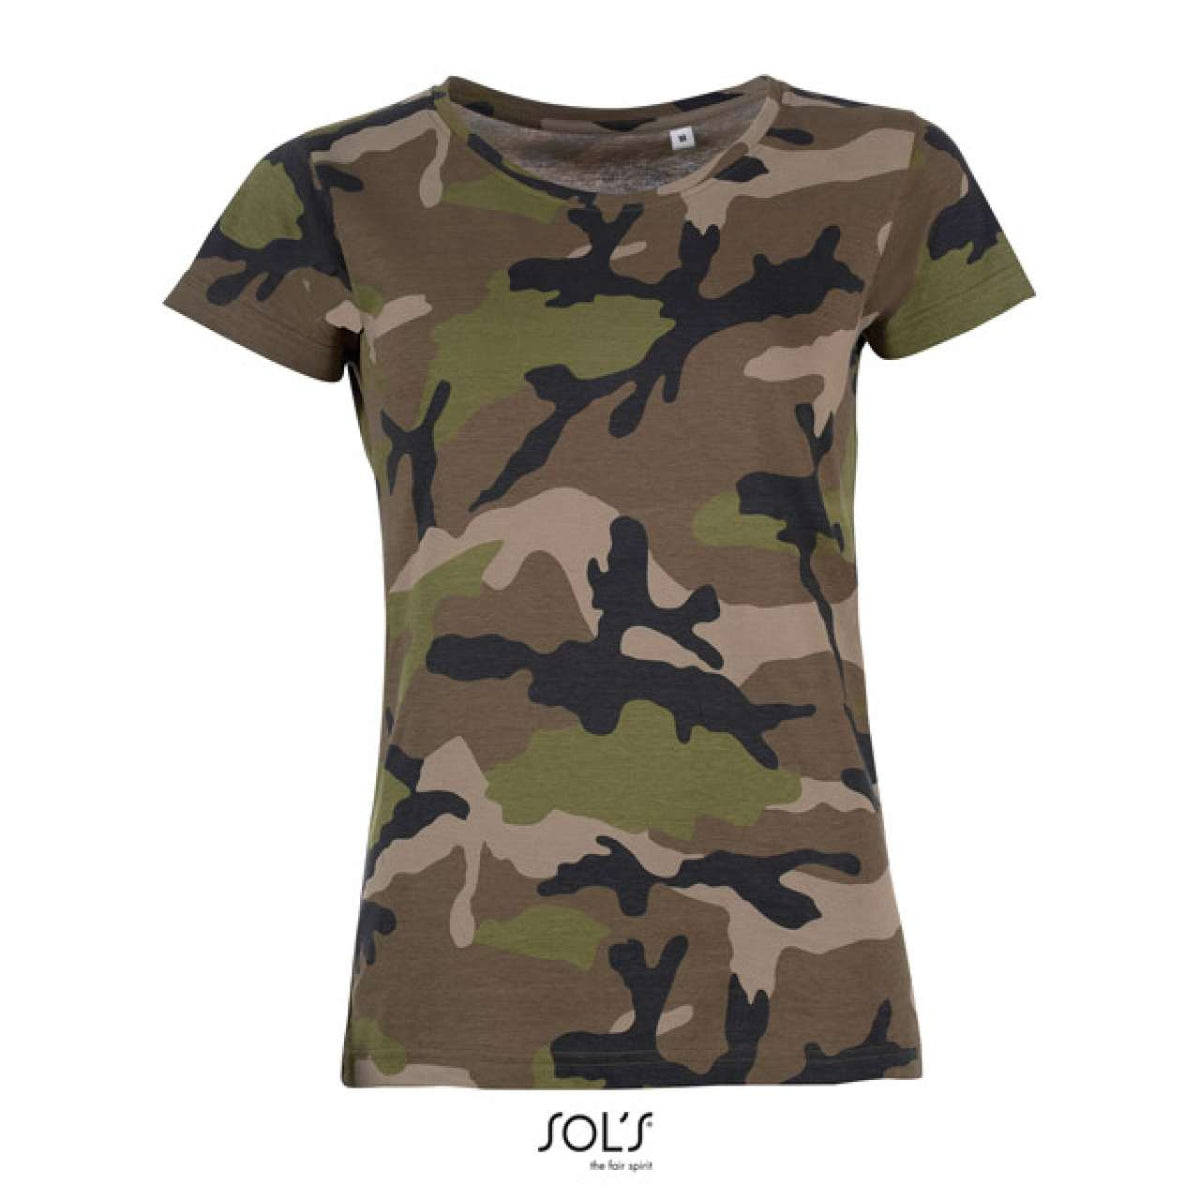 SOL'S Damen Camouflage T-Shirt Kurzarm Baumwolle Rundhals Army